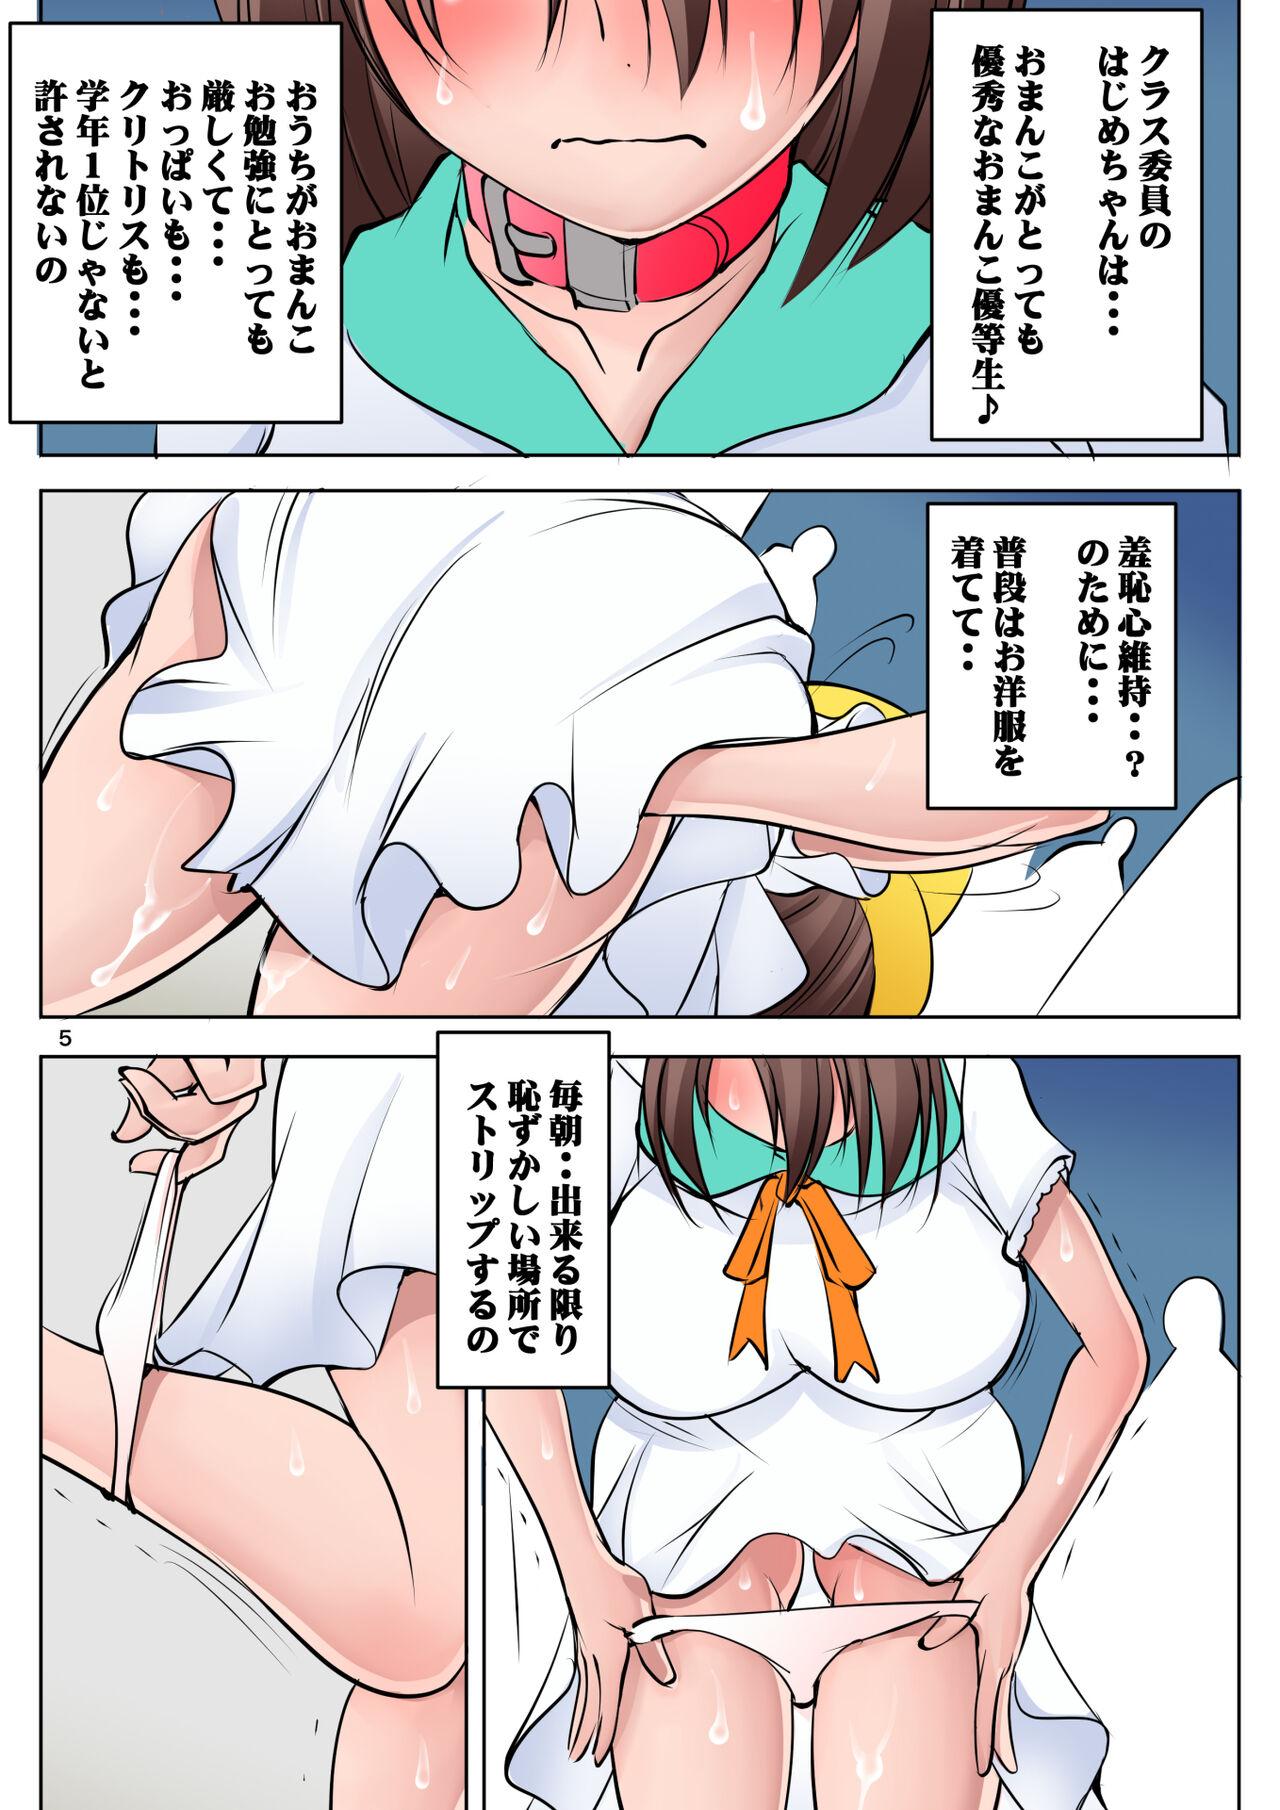 Oral Sex Porn Nanka mō sutōrī toka kangaeru no mendo kusainode tadatada hiwaide ero i kyōiku o suru dake no hentai gakkō no manga 2 Korean - Page 5